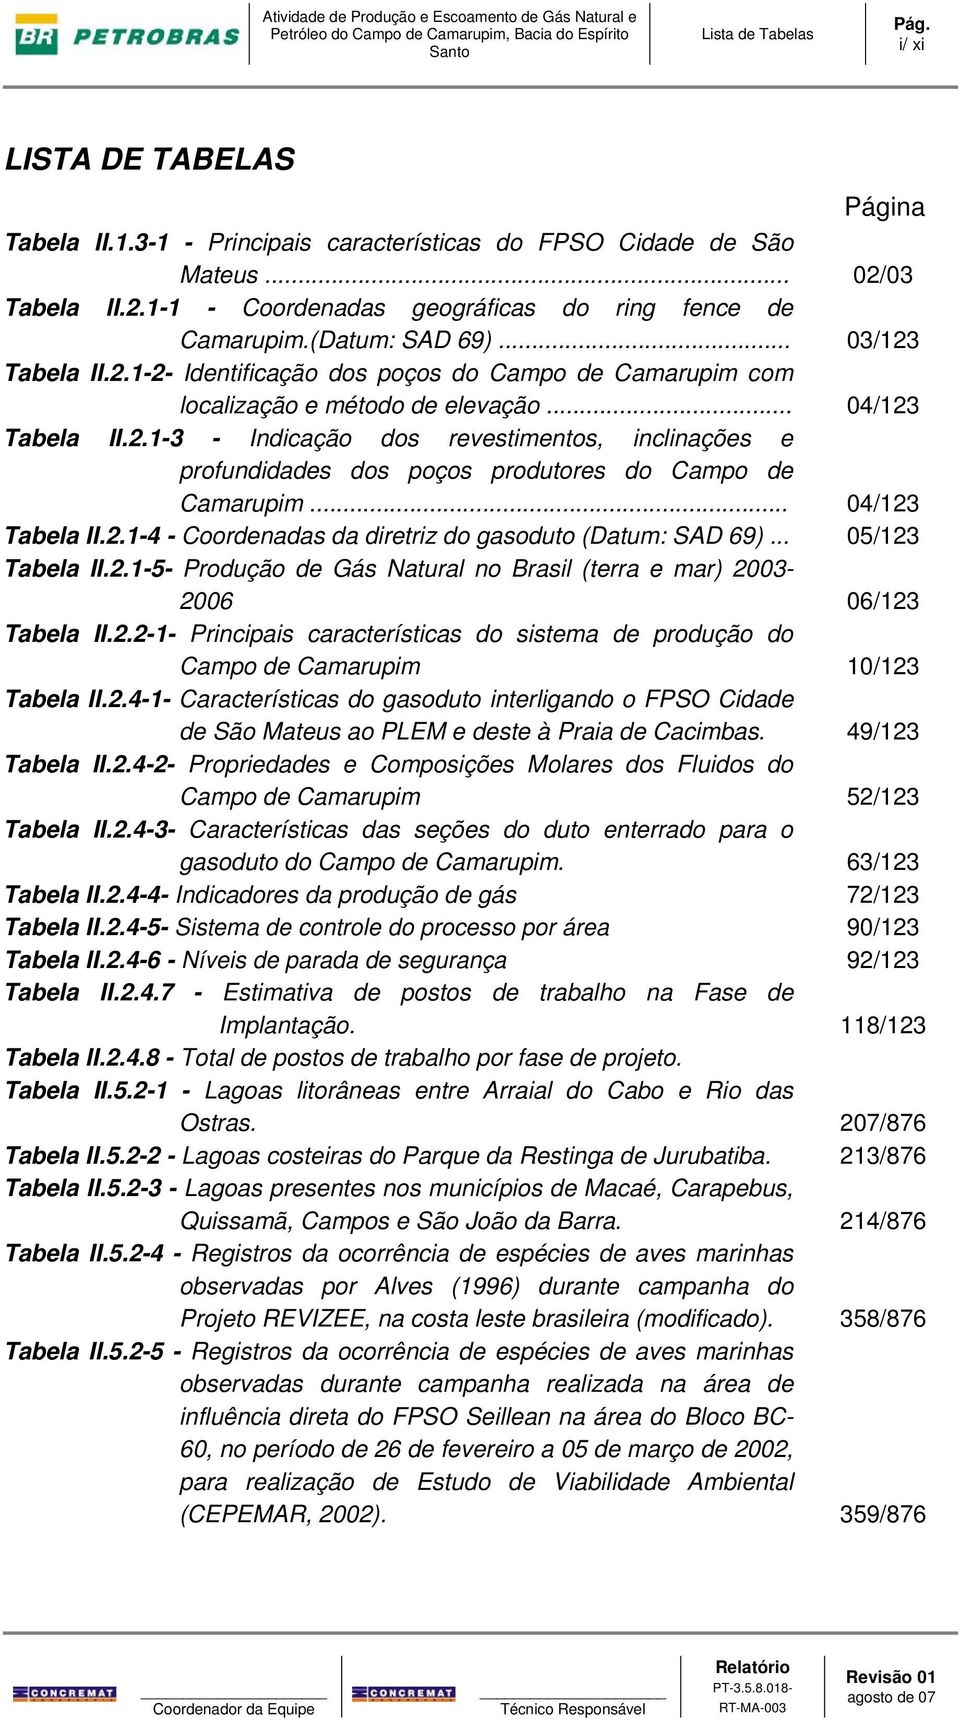 .. 04/123 Tabela II.2.1-4 - Coordenadas da diretriz do gasoduto (Datum: SAD 69)... 05/123 Tabela II.2.1-5- Produção de Gás Natural no Brasil (terra e mar) 2003-2006 06/123 Tabela II.2.2-1- Principais características do sistema de produção do Campo de Camarupim 10/123 Tabela II.